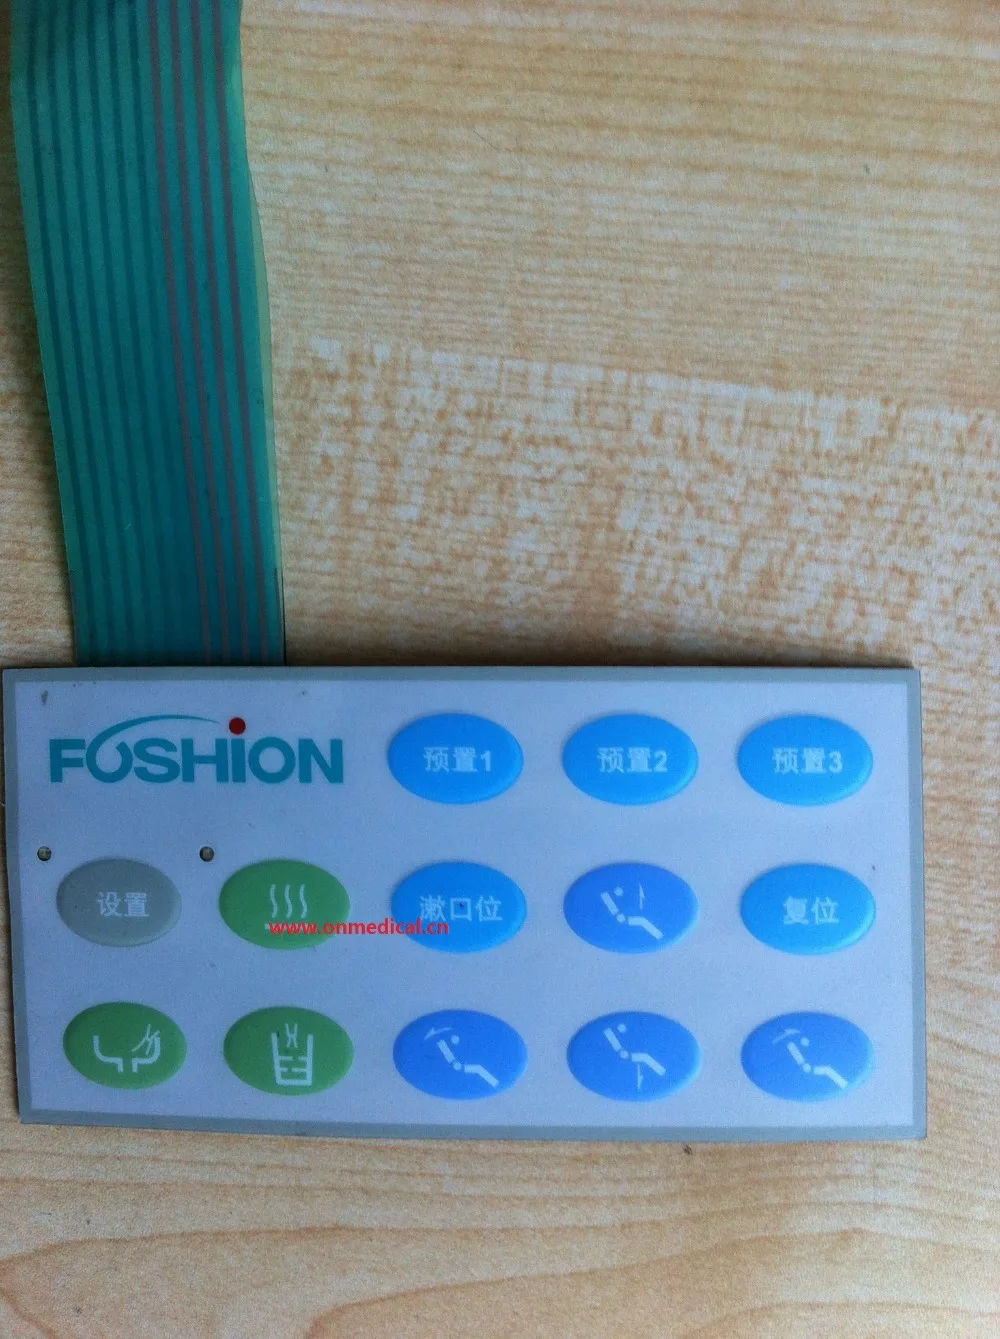   Foshion FJ22 FJ24,    